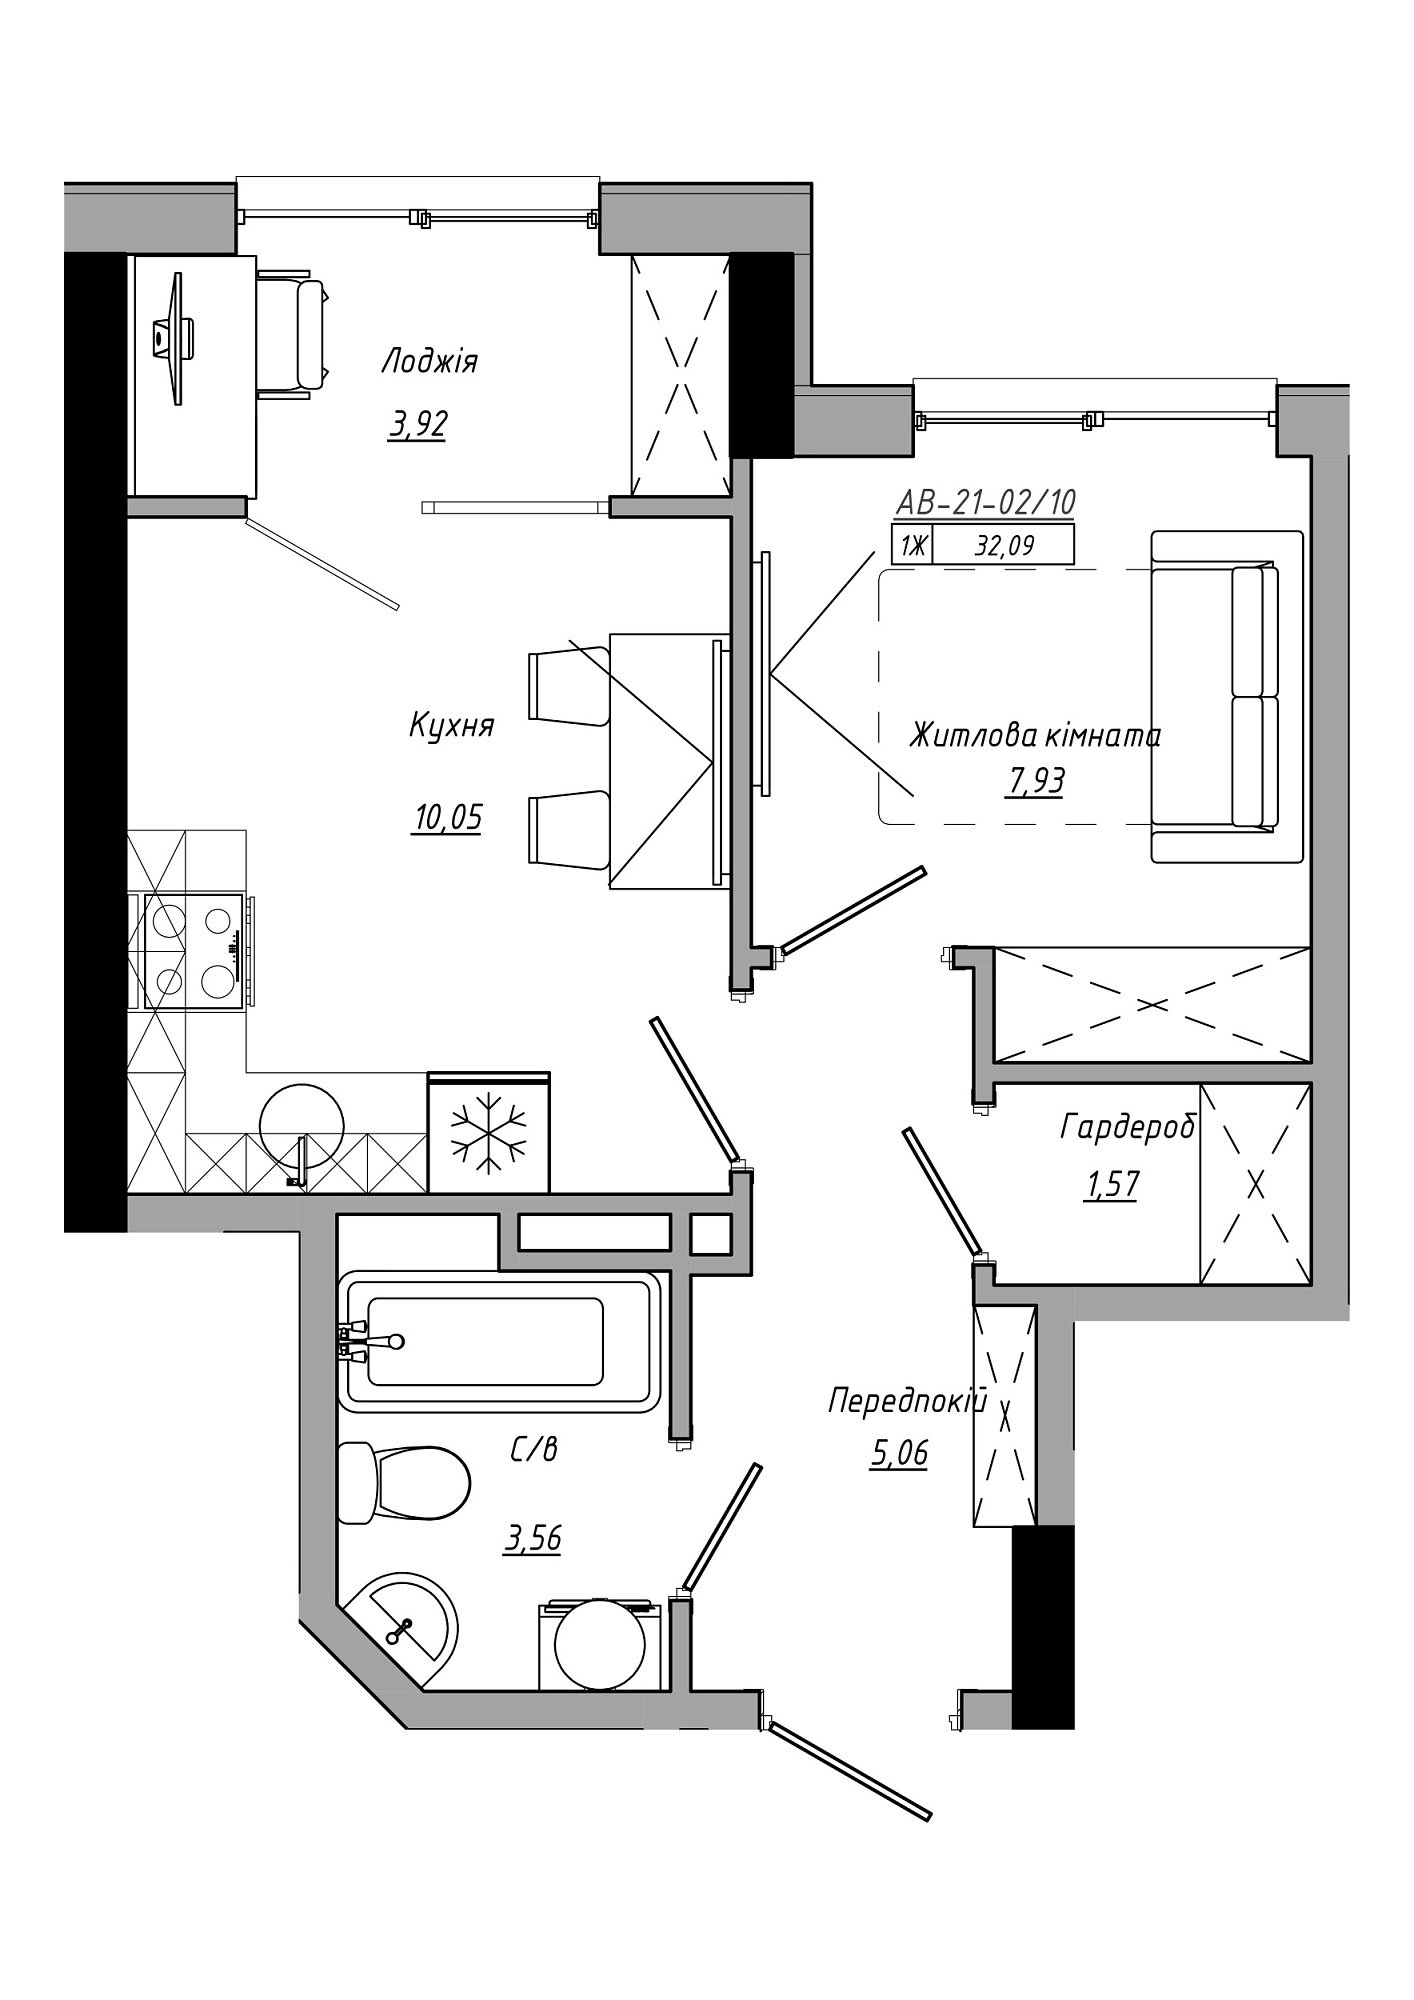 Планировка 1-к квартира площей 32.09м2, AB-21-02/00010.